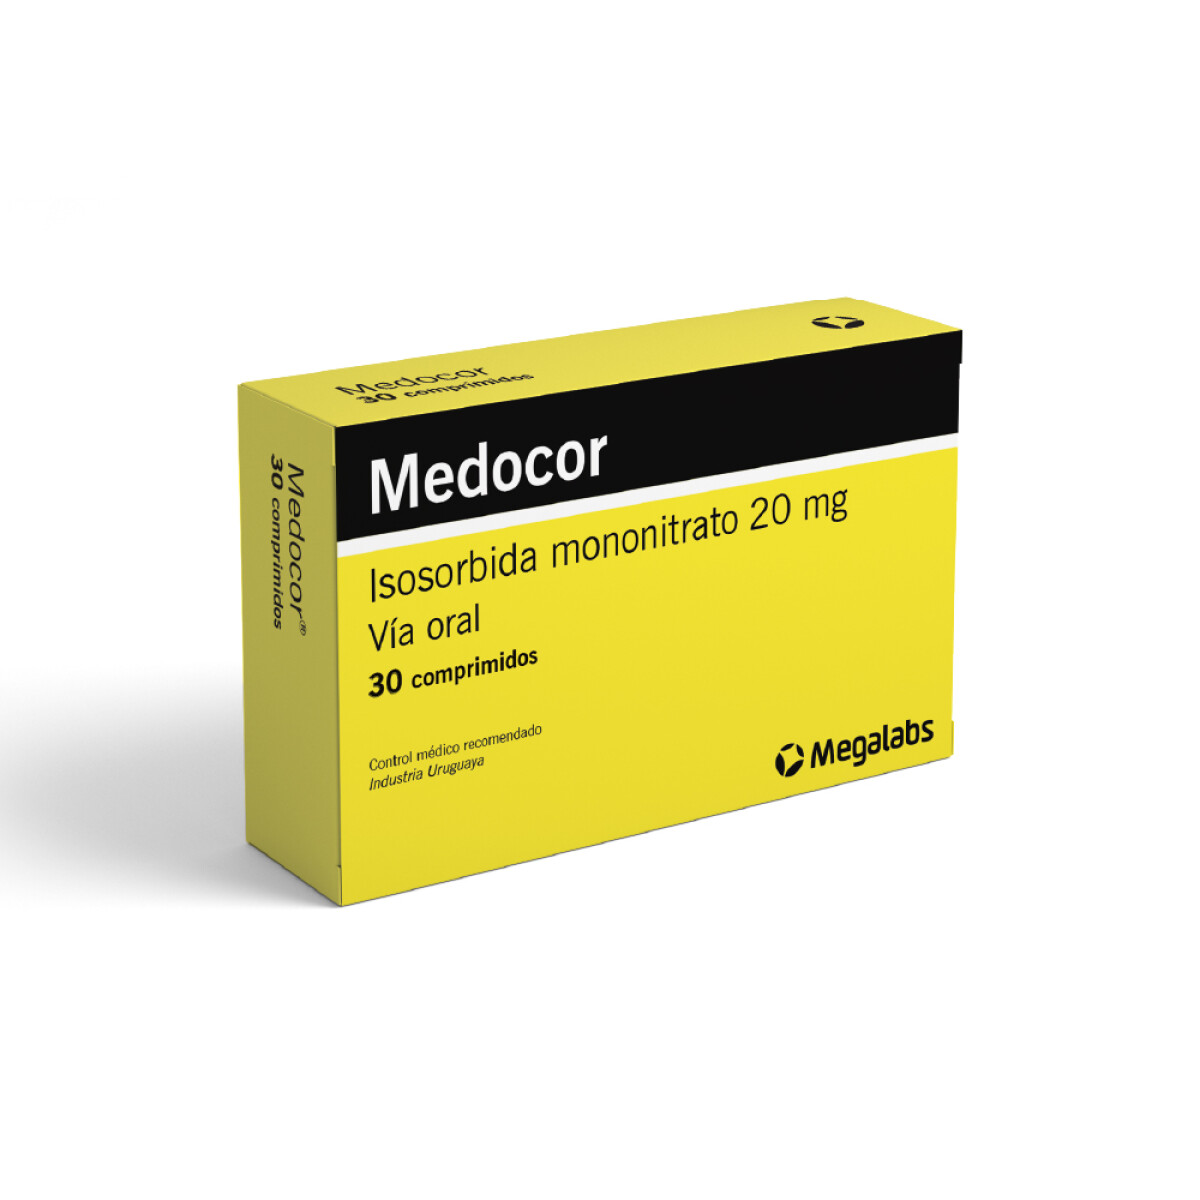 Medocor 20 Mg. 30 Comp. 